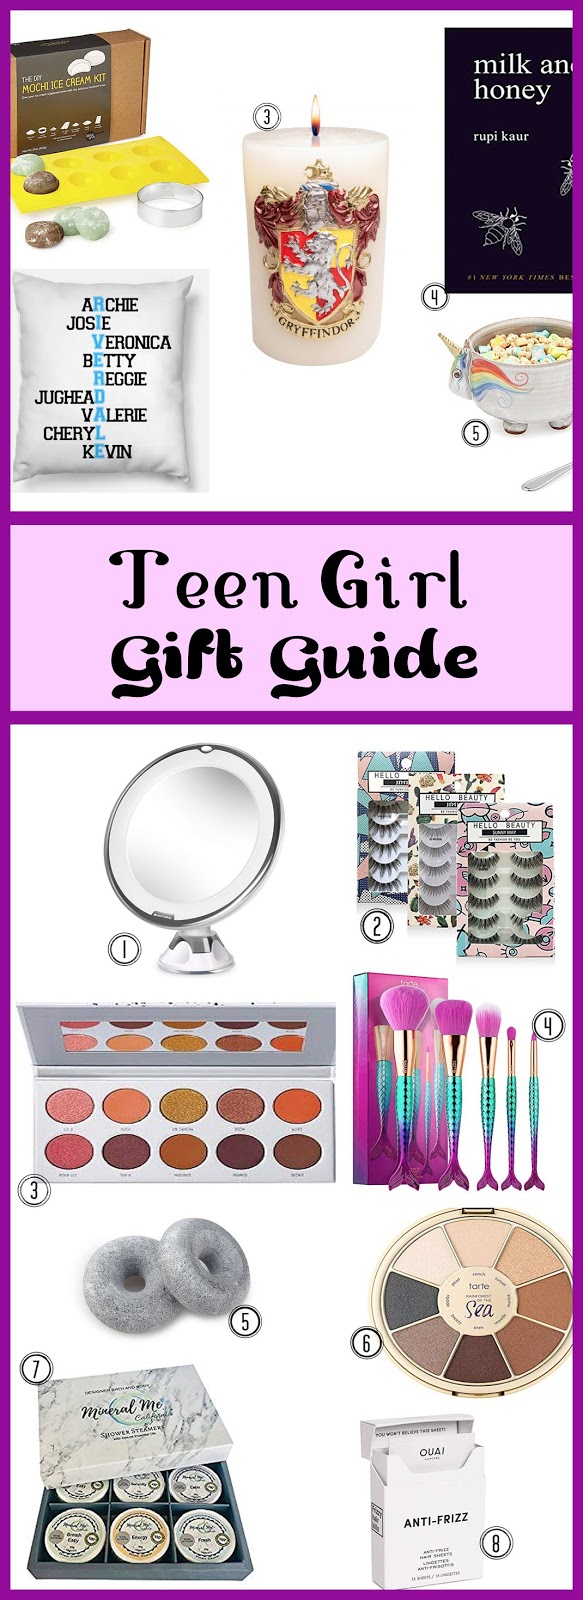 Gift Guide for Teen Girls